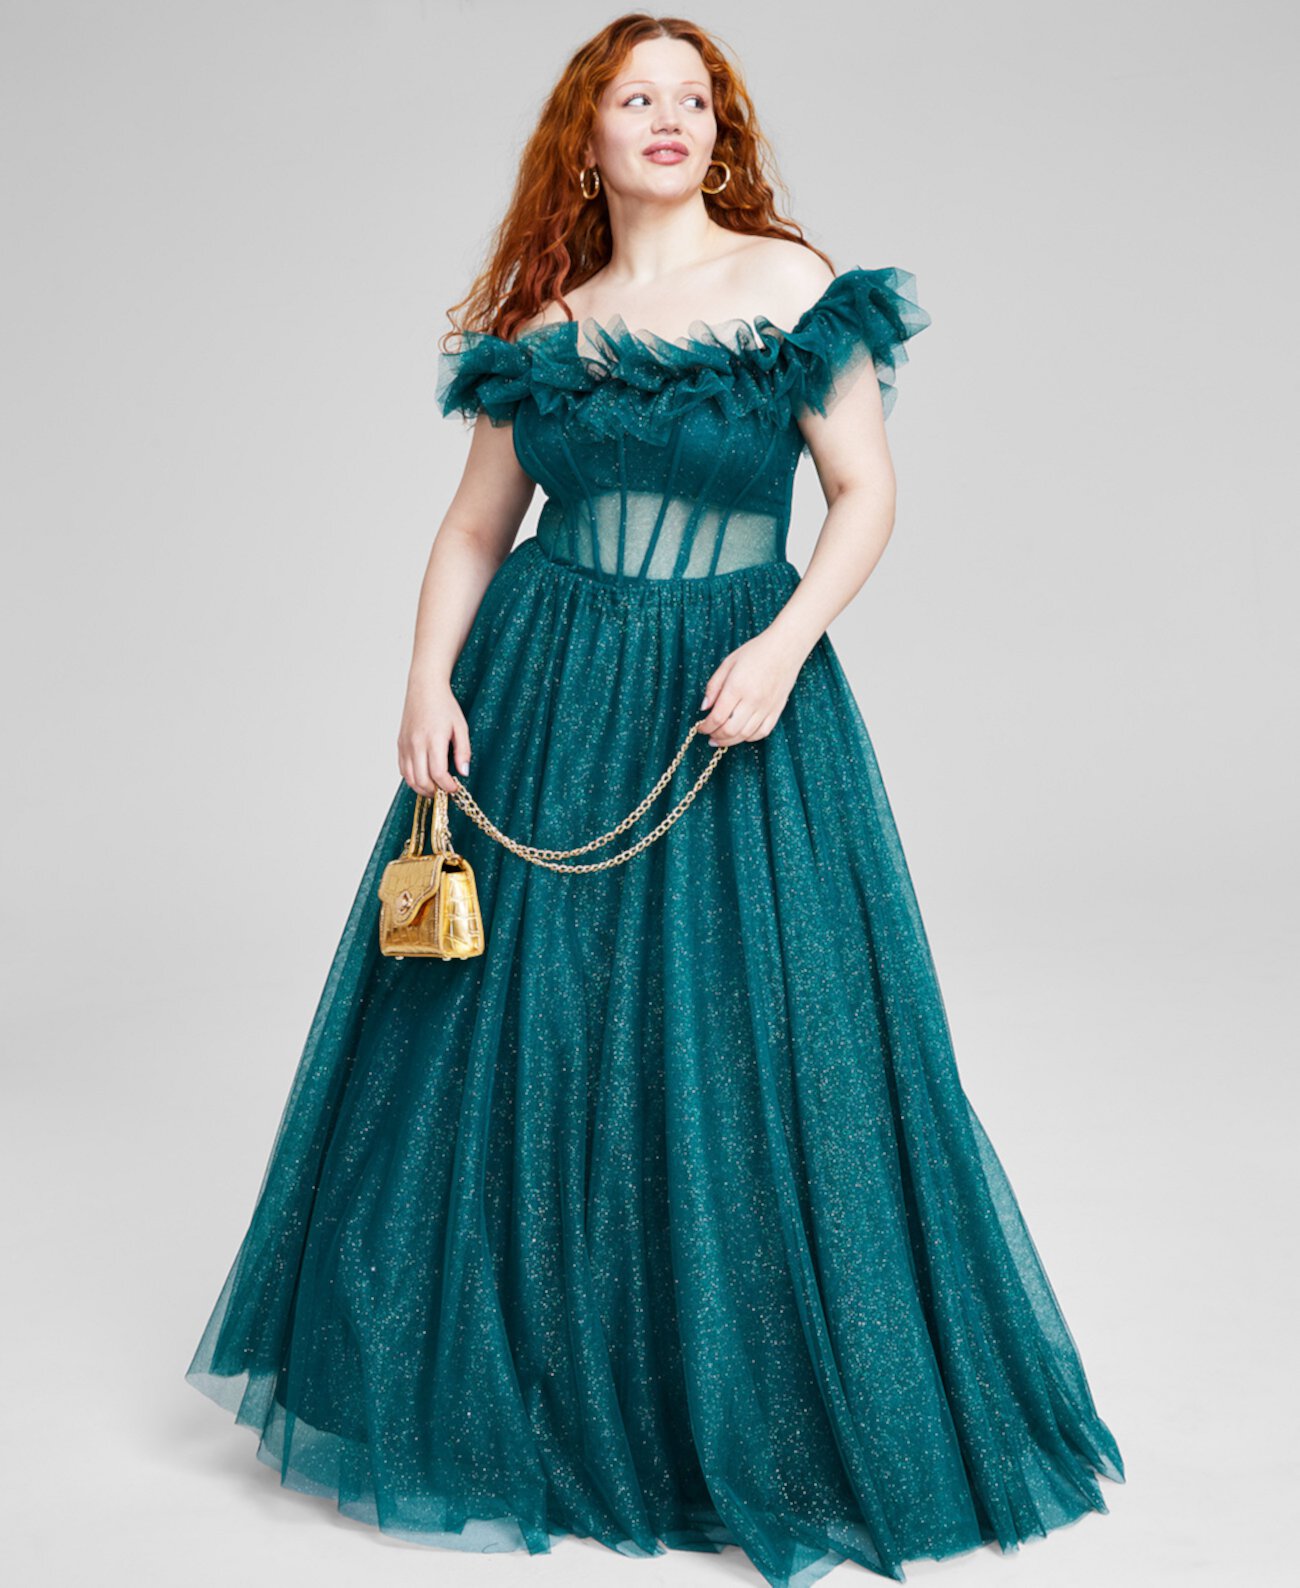 Модное тюлевое платье больших размеров с открытыми плечами, созданное для Macy's Say Yes